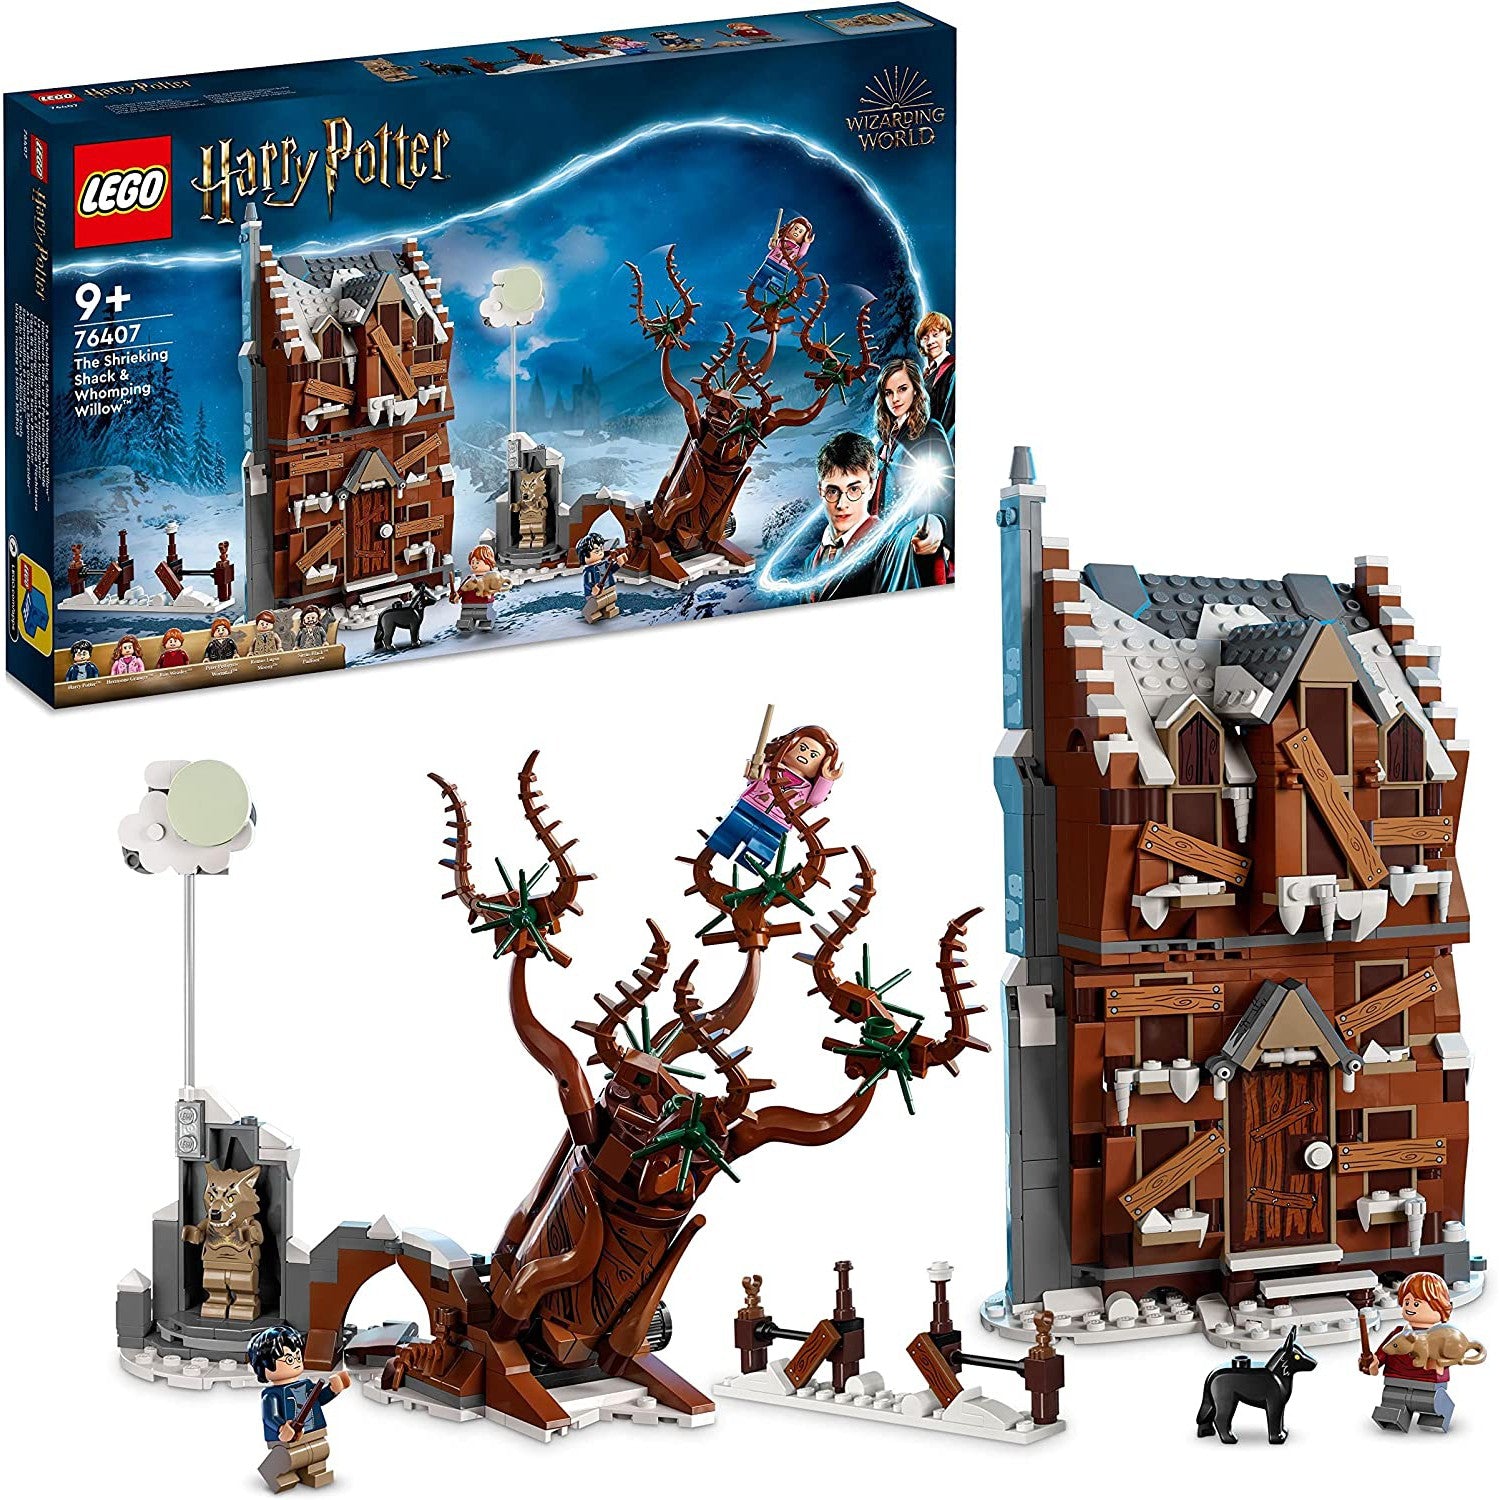 Lego 76407 Harry Potter Shrieking Shack & Whomping Willow